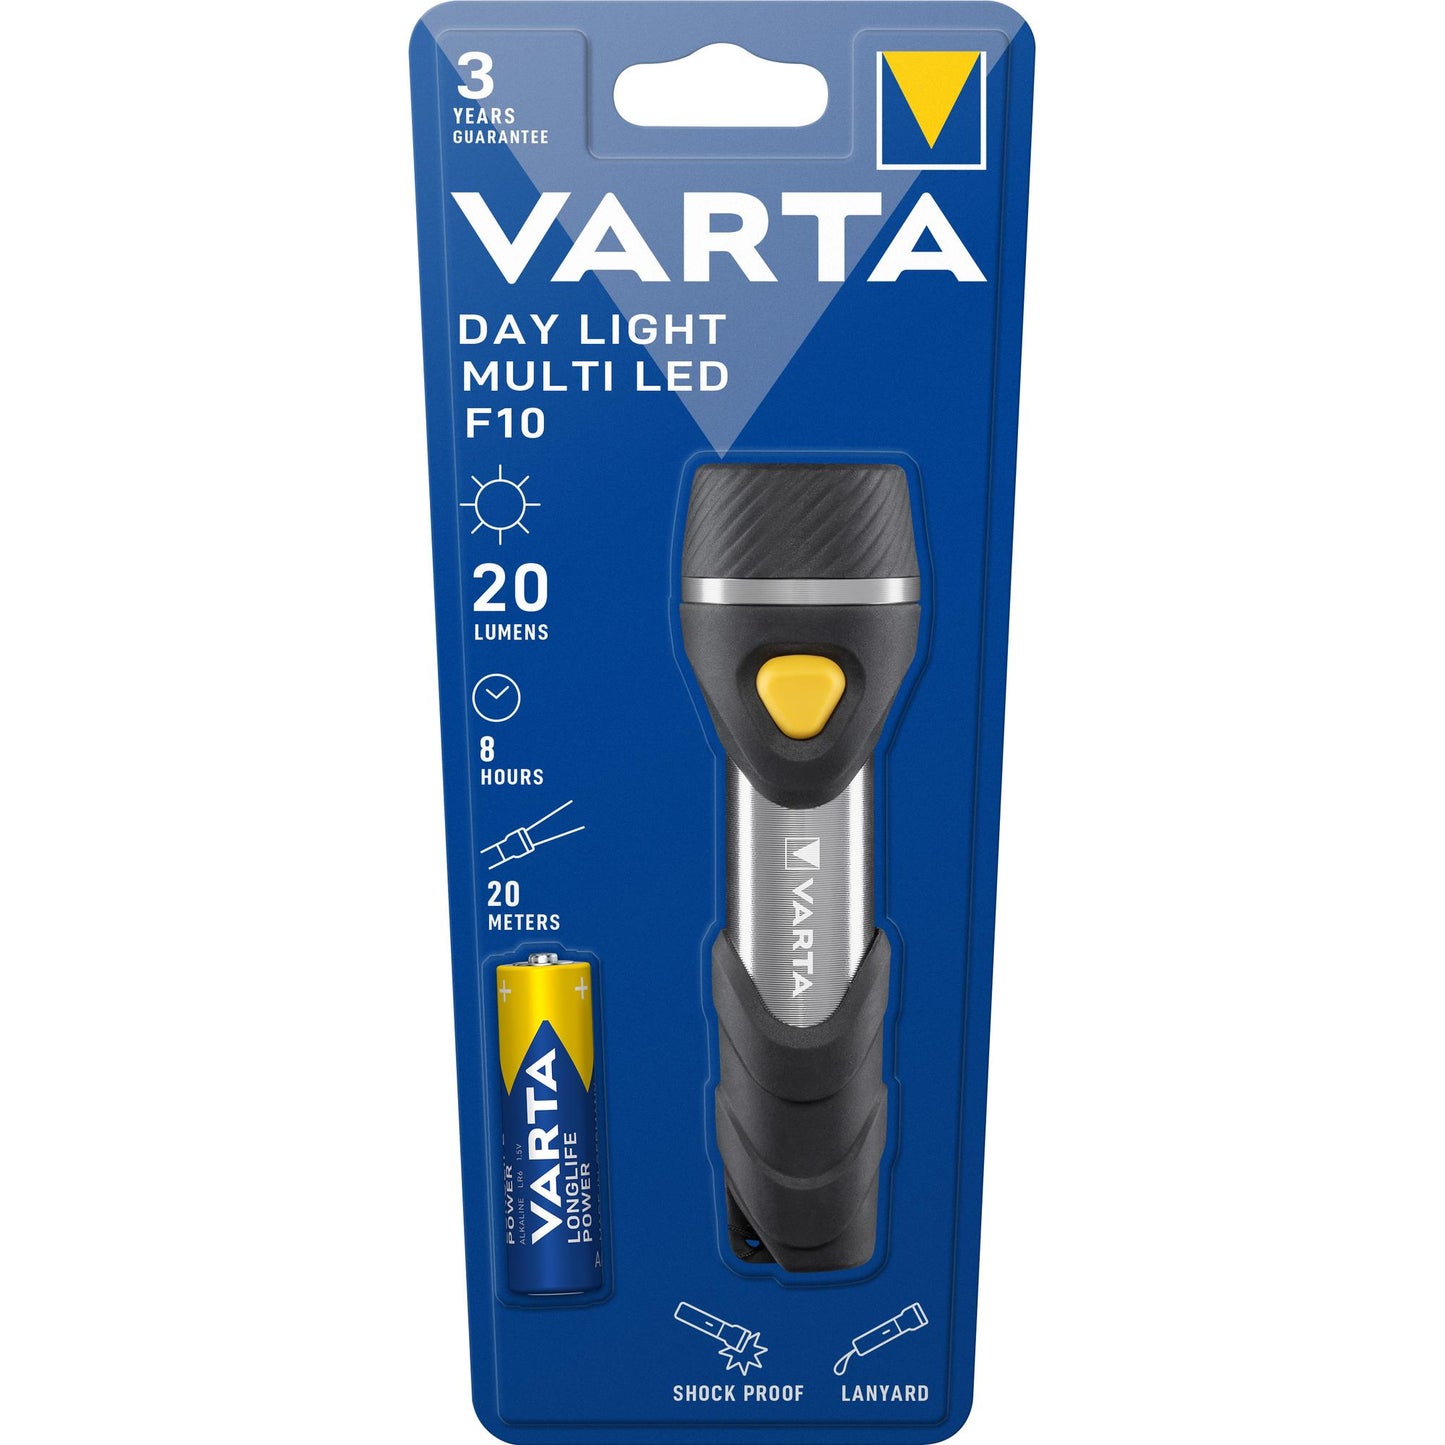 VARTA LED Taschenlampe Day Light, Multi LED F10, 20lm inkl. 1x Batterie Alkaline AAA, Retail Blister